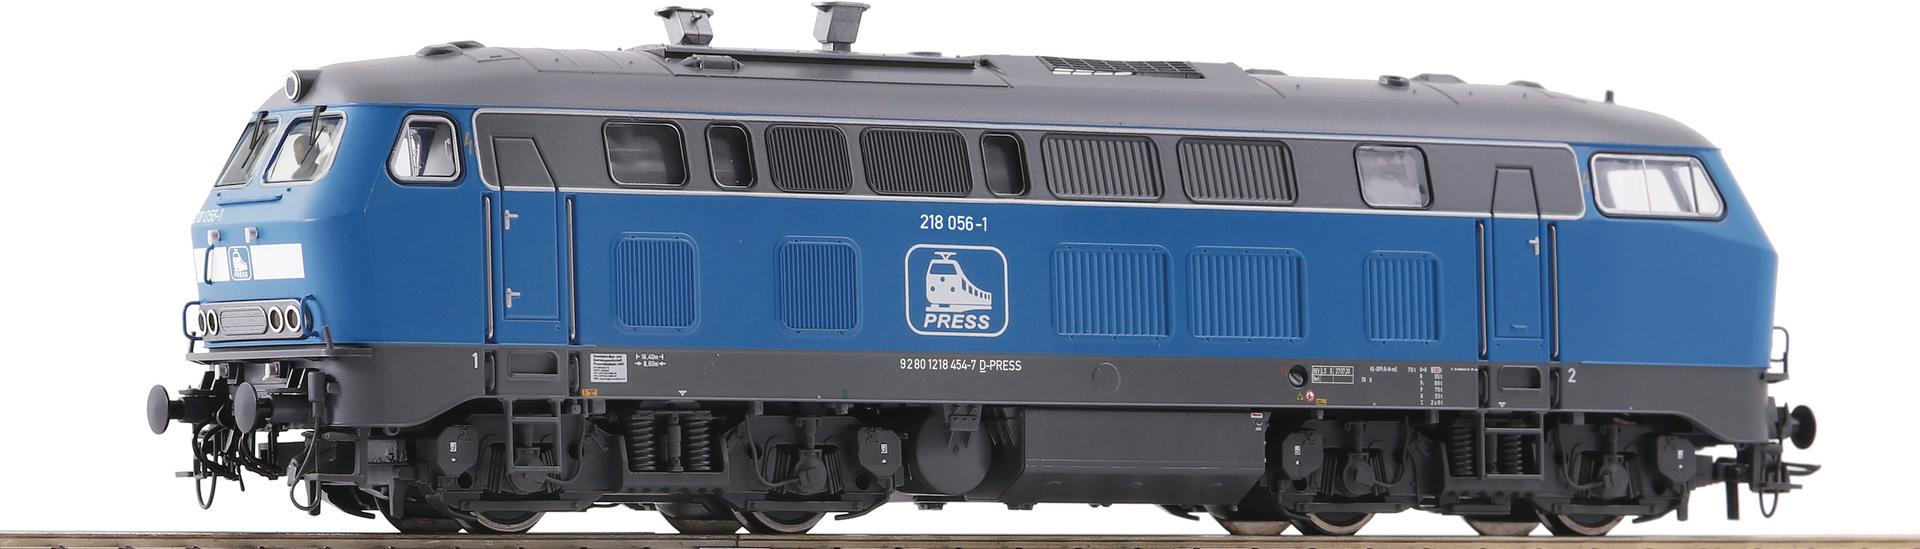 Roco Diesellokomotive 218 056-1 - PRESS - Eisenbahn-Modell - HO (1:87) - Beide Geschlechter - 189 mm (7310025)